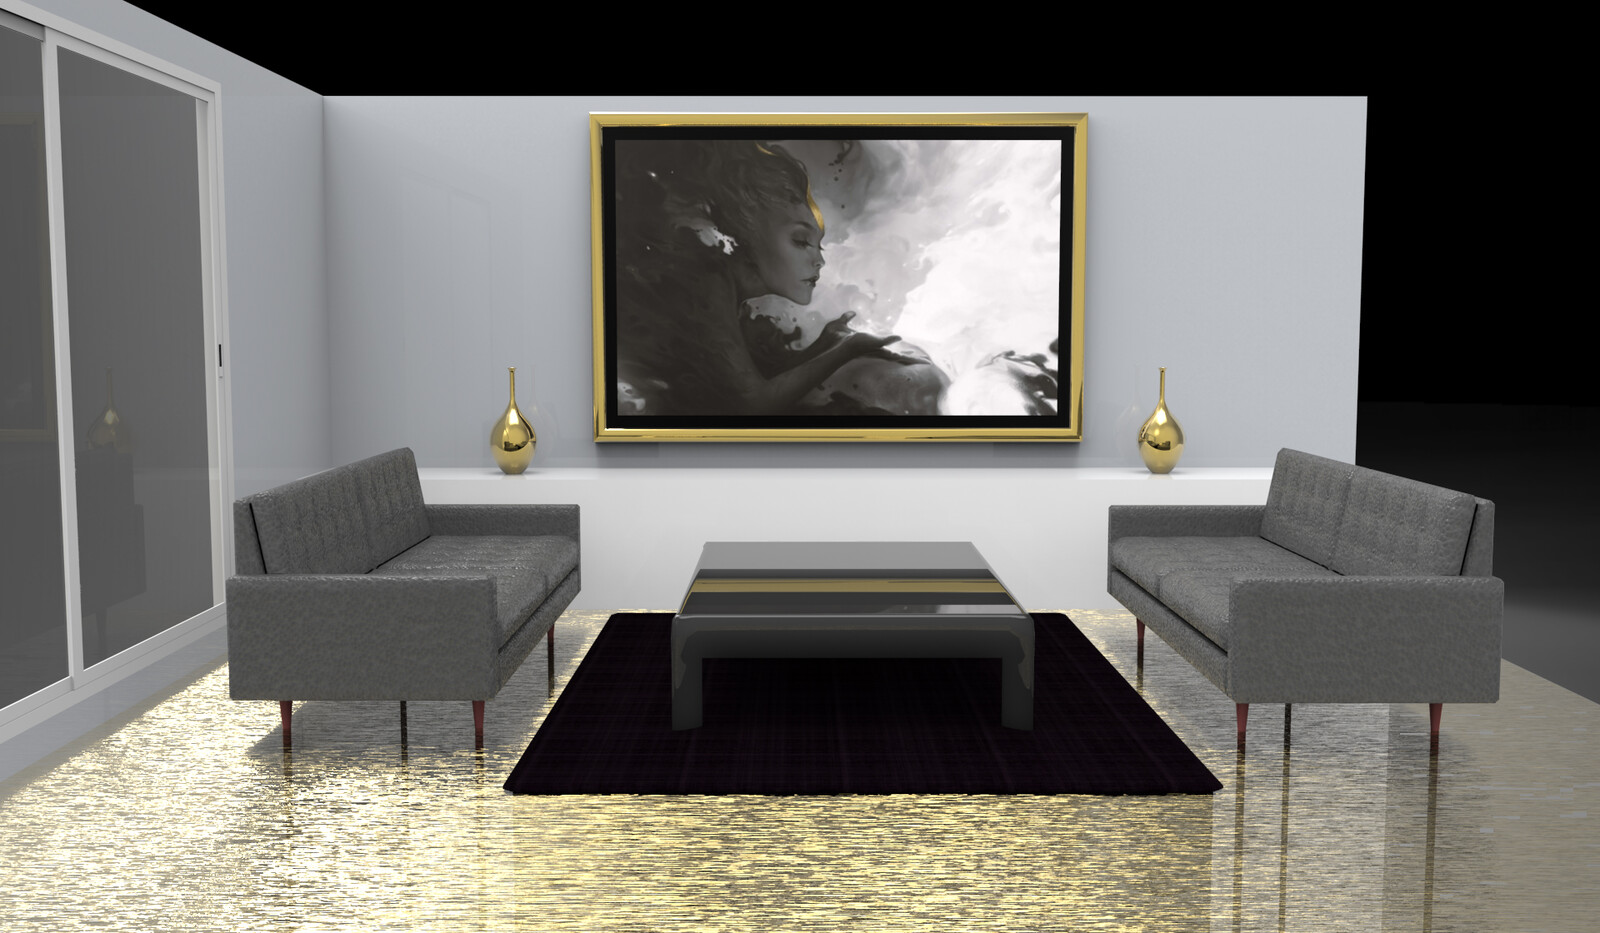 24k gold floor texture